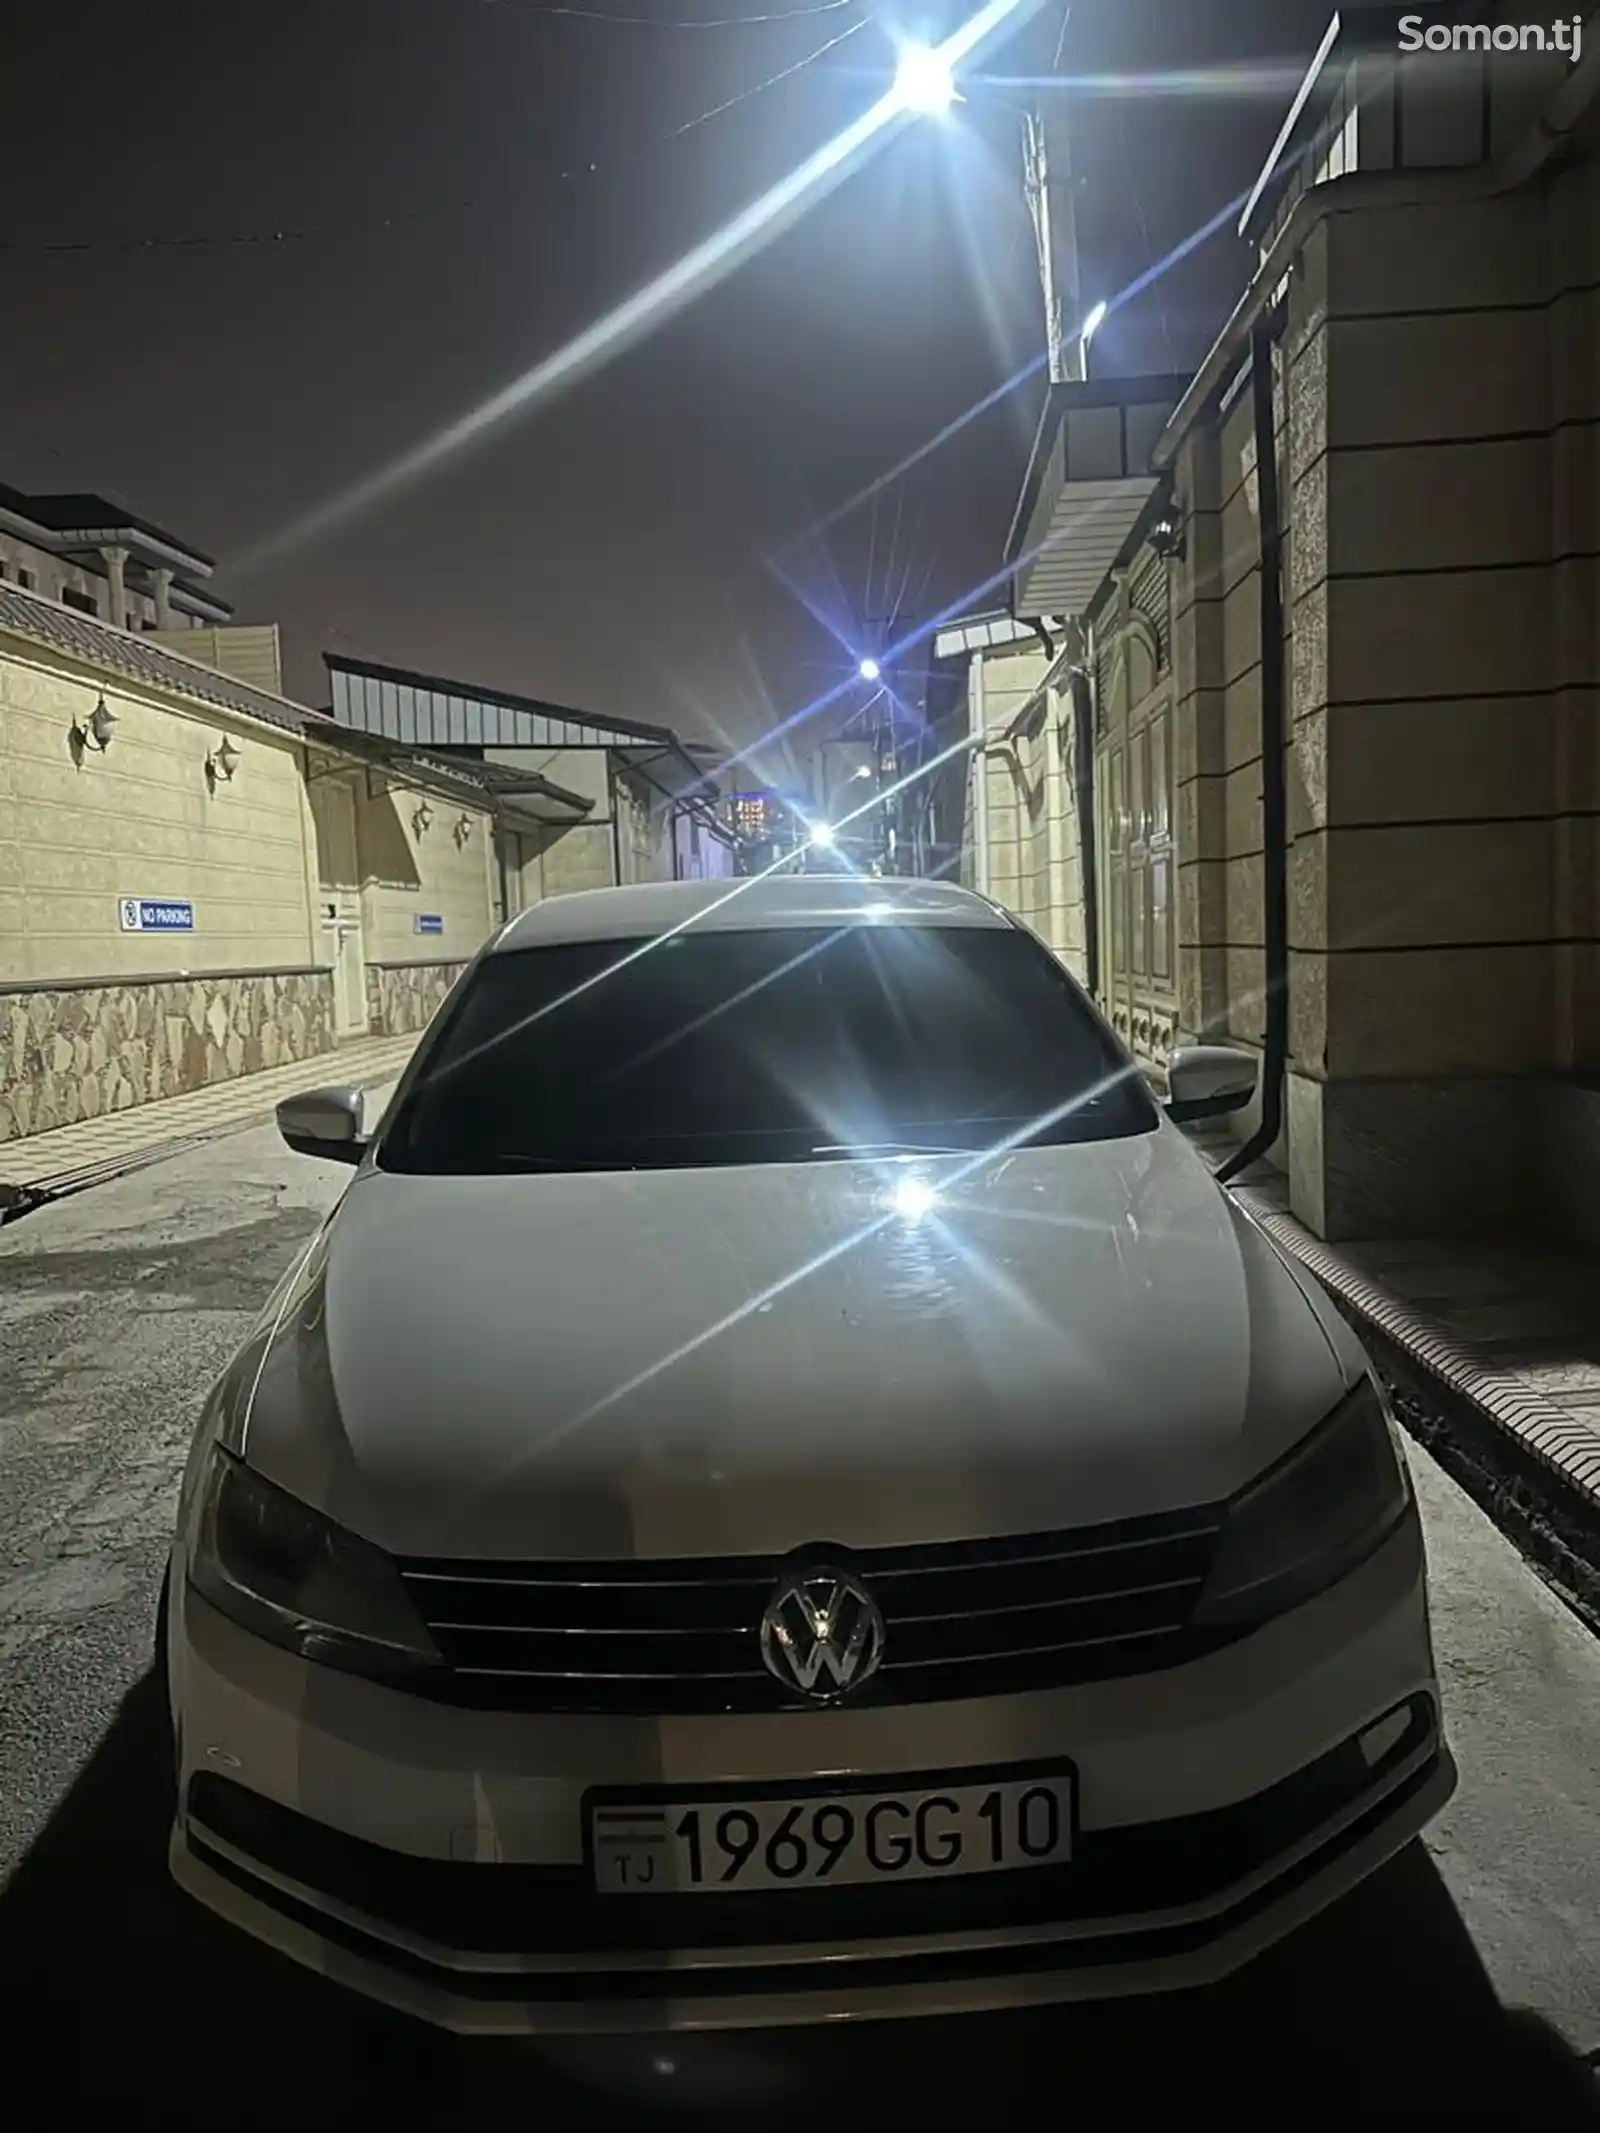 Volkswagen Jetta, 2014-4